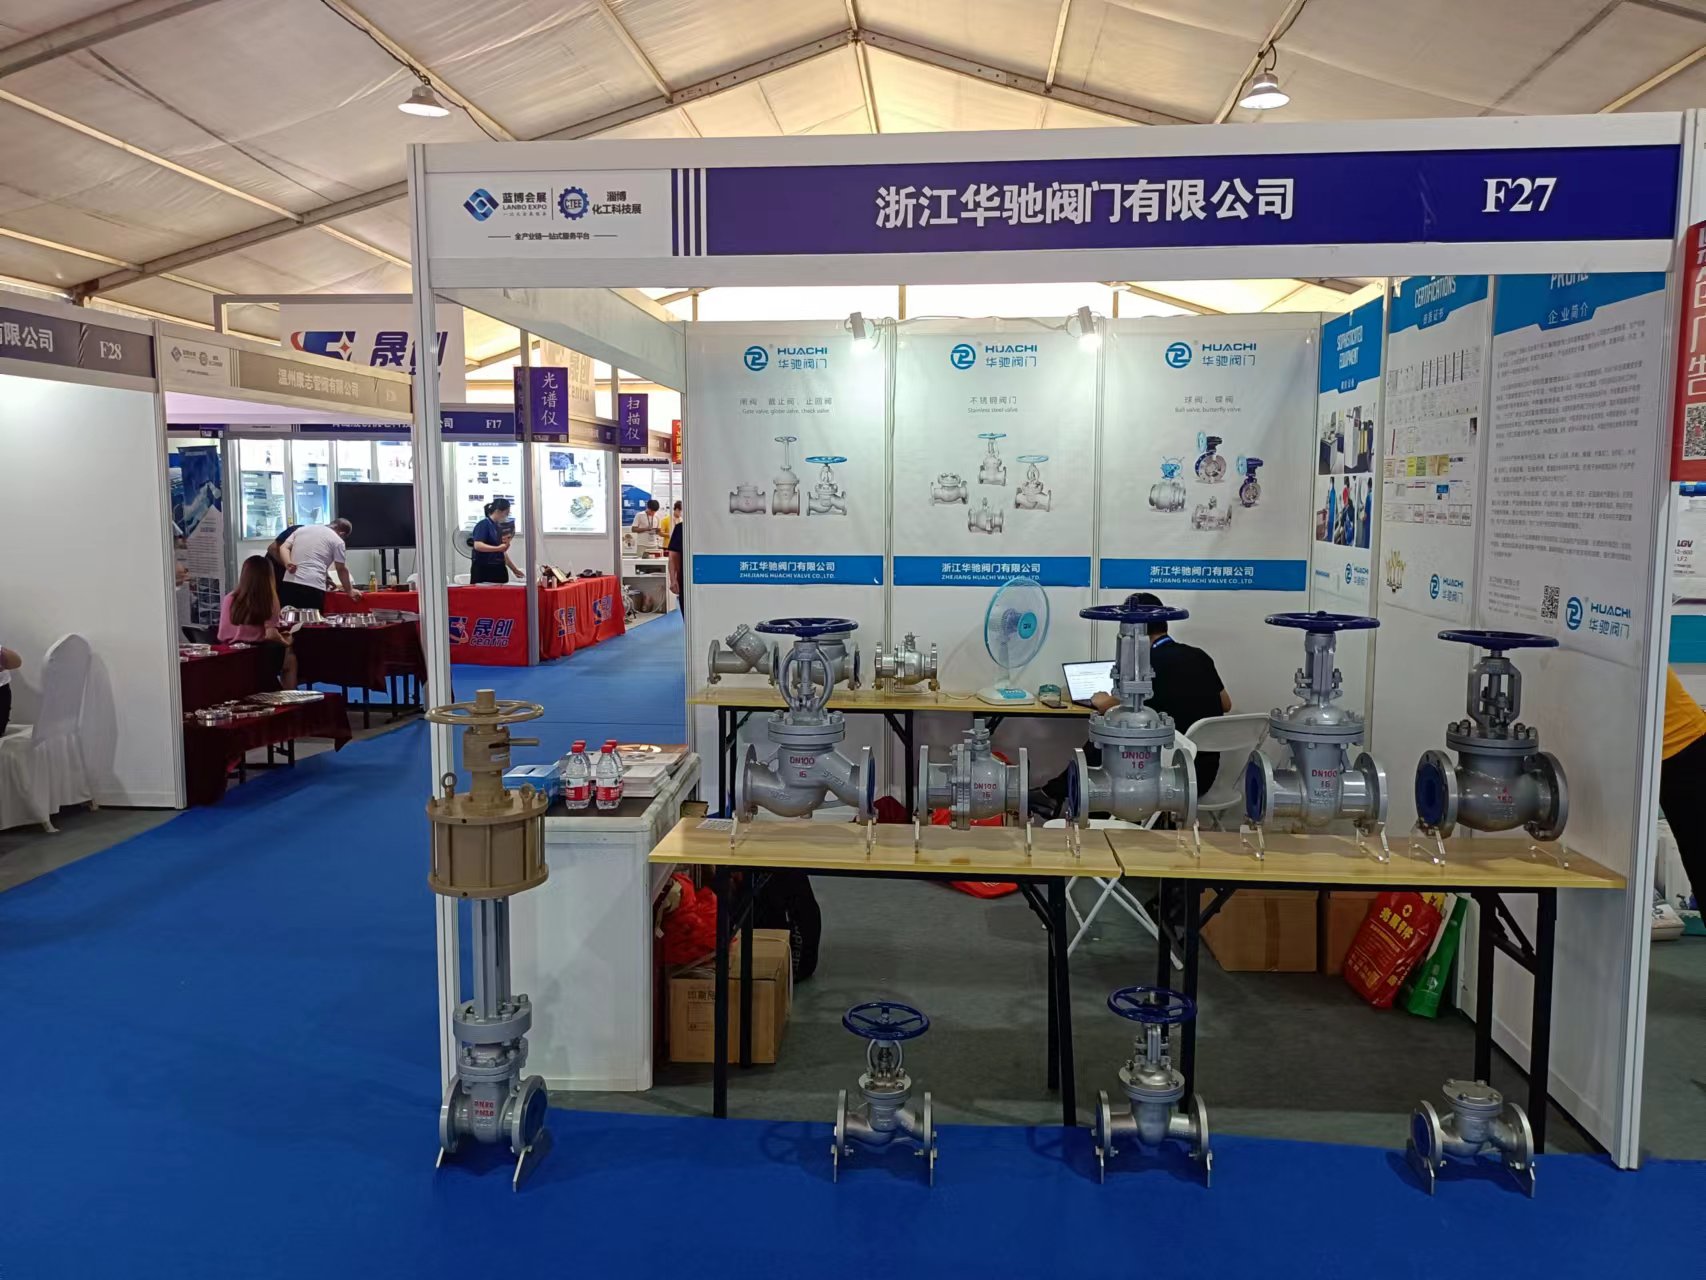 Zhejiang Huachi Valve Co., Ltd. deltog i Zibo Chemical Industry Exhibition 2022 China (Zibo) International Chemical Technology Expo